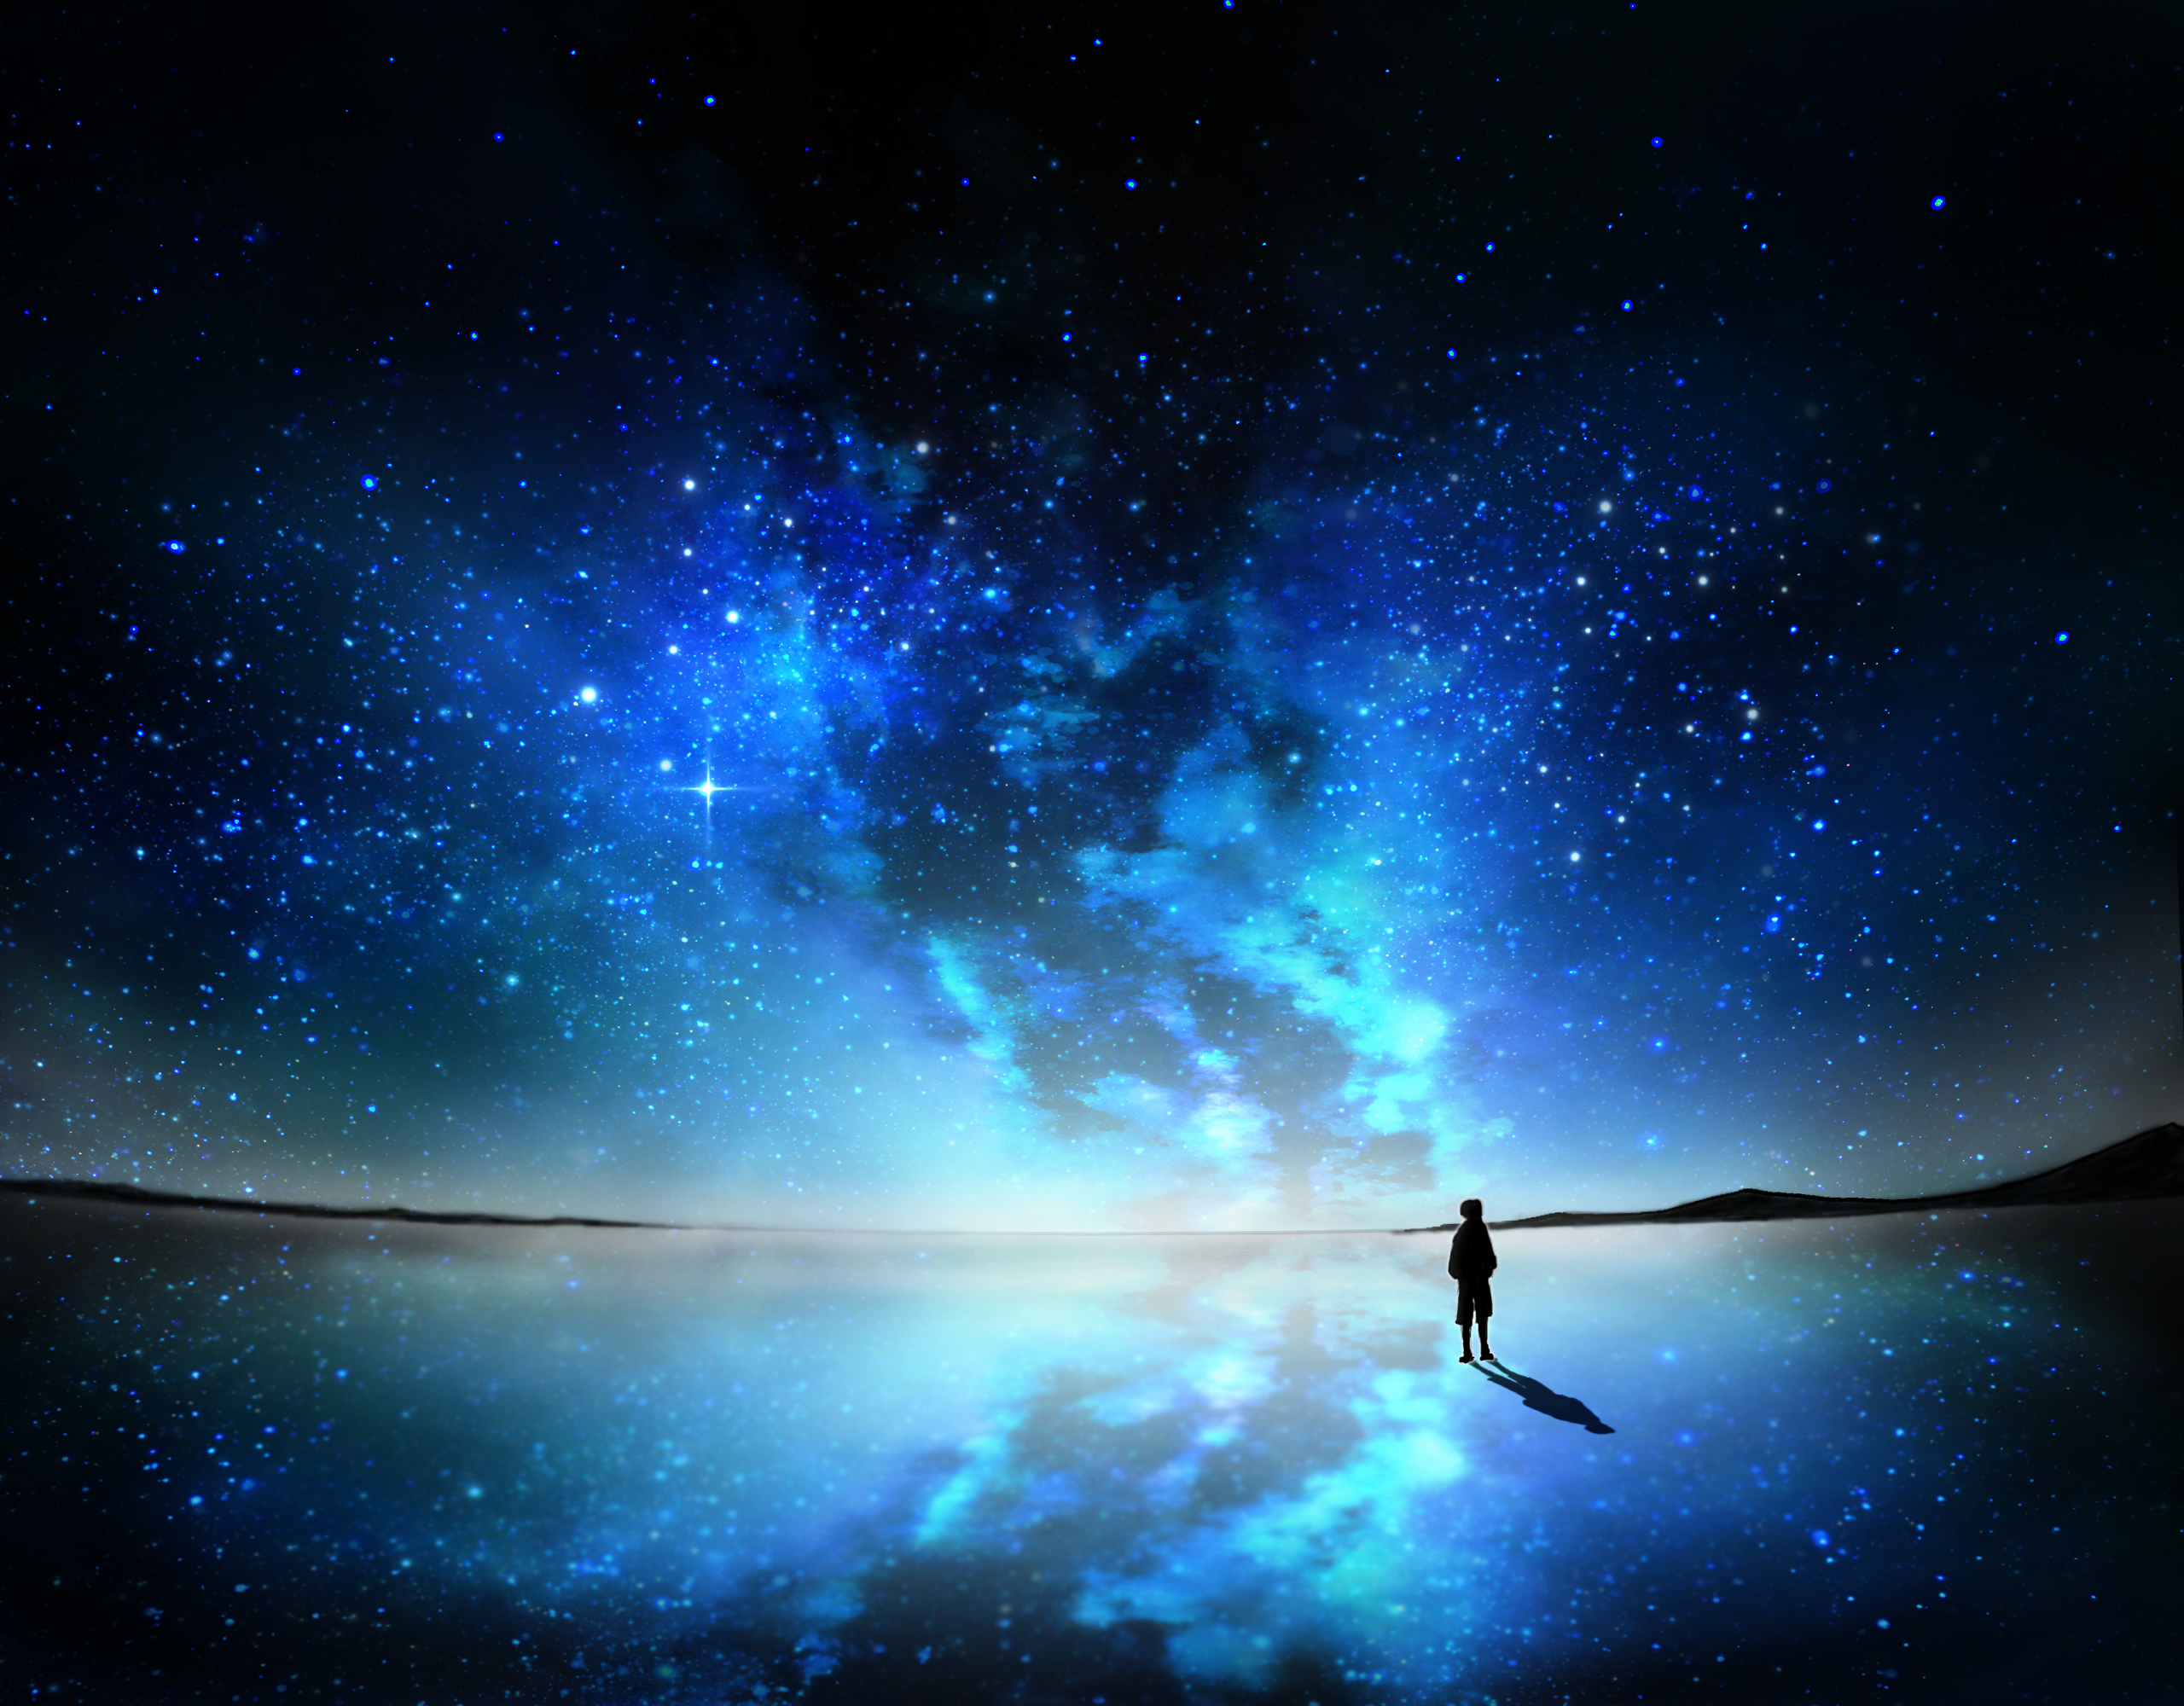 Бесплатное фото Силуэт парня на фоне звездного неба синего цвета